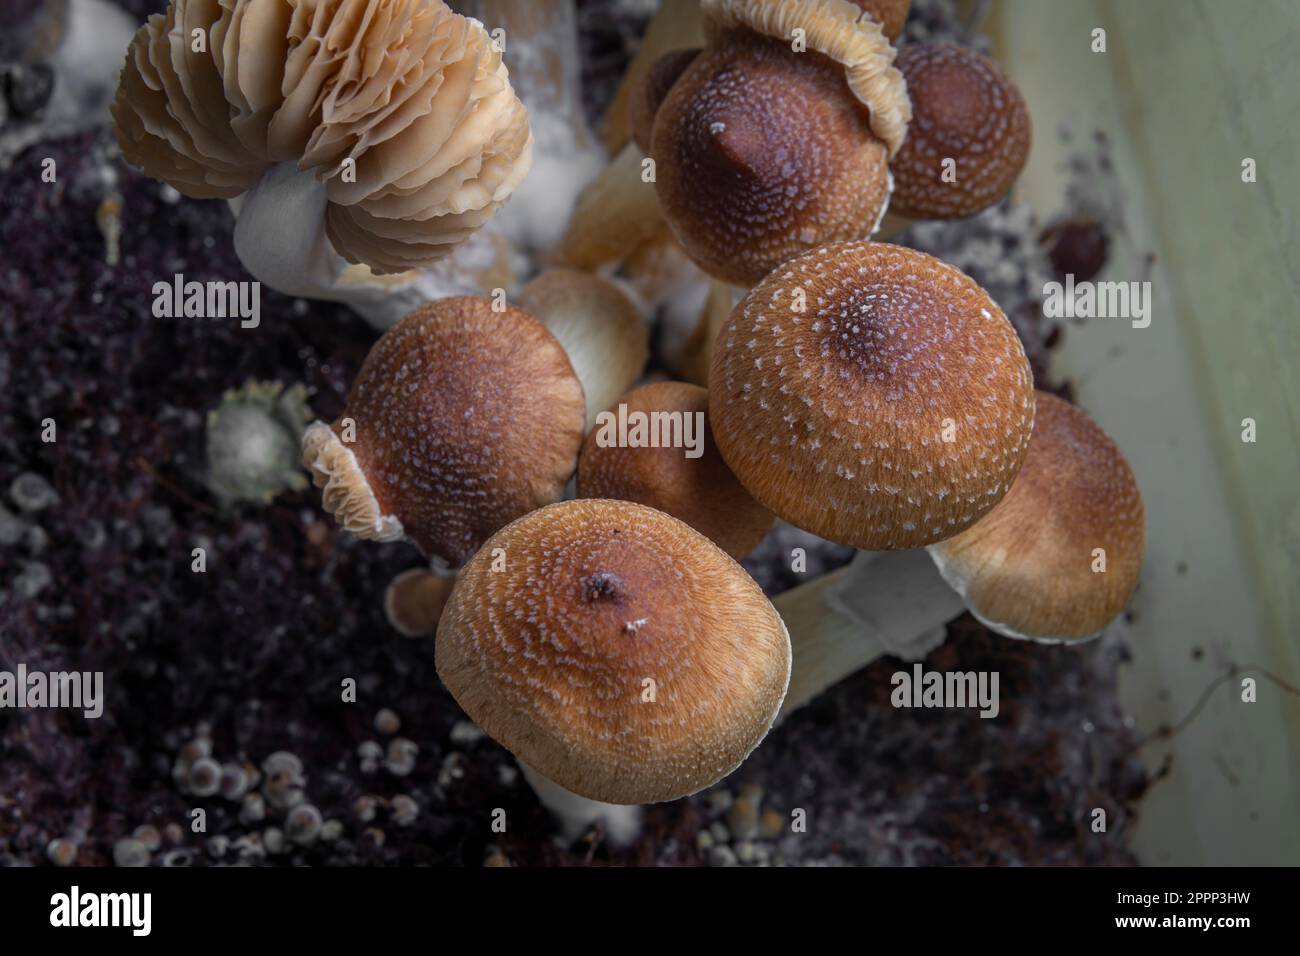 Funghi messicani sani psilocybe in scatola di plastica bagnata su tavola calda Foto Stock